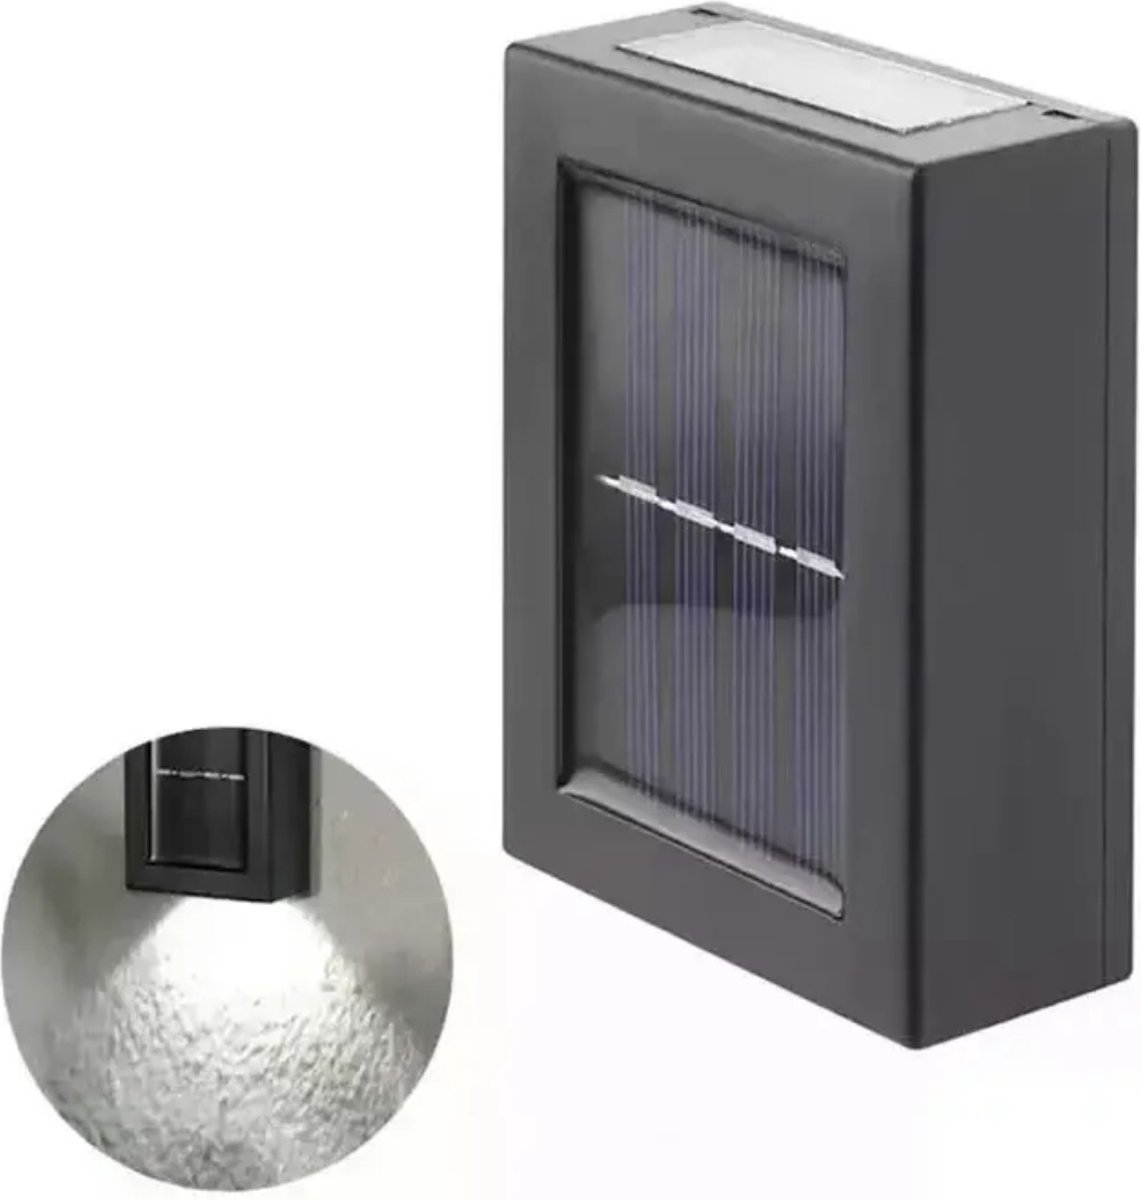 HDJ Solar Upside down Buitenlamp - Zwart - Set van 8 Stuks - Bewegingssensor - LED - Waterdicht - Buiten & Tuin sensor - Buitenverlichting op Zonne-energie - Stijlvolle Verlichting voor Buiten - Wit licht - Tweezijdig